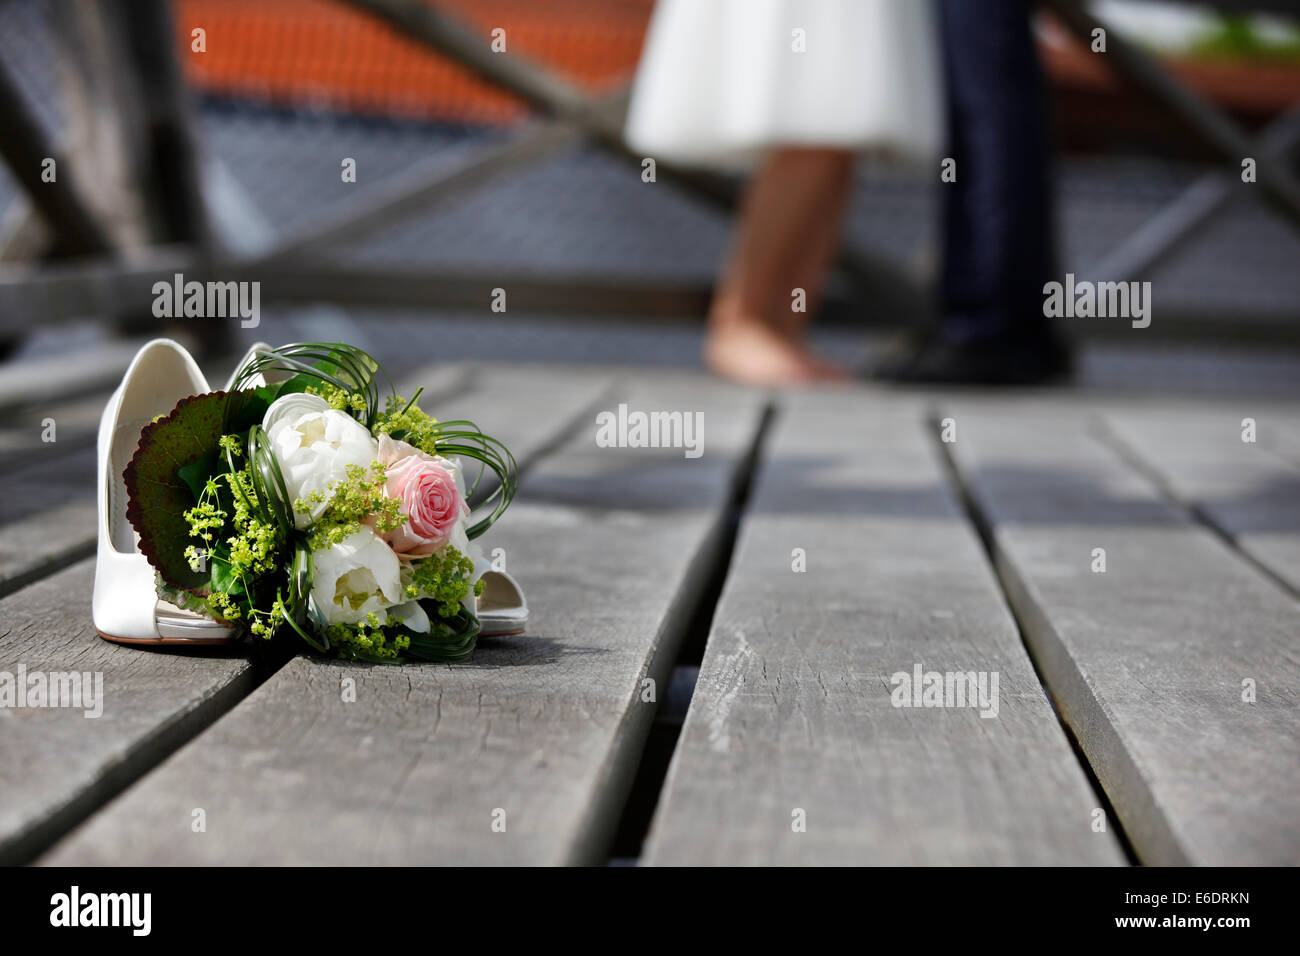 Ramo de novia con rosas blancas tumbado en el suelo Foto de stock